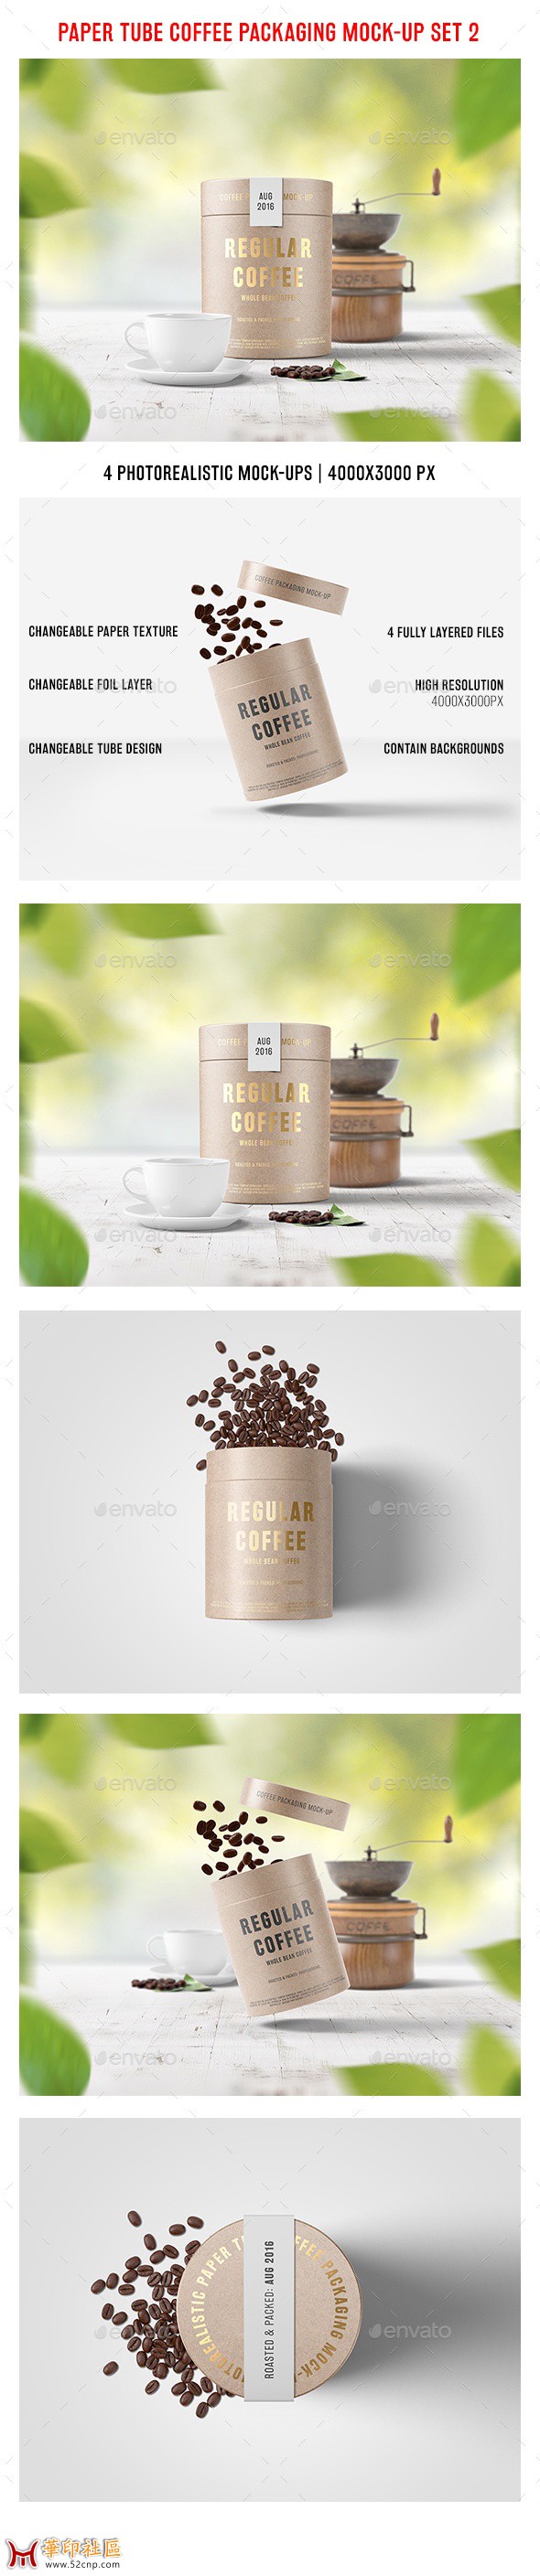 国外收费资源 咖啡包装样机素材 Mock-Up 做设计朋友的福利{tag}(1)